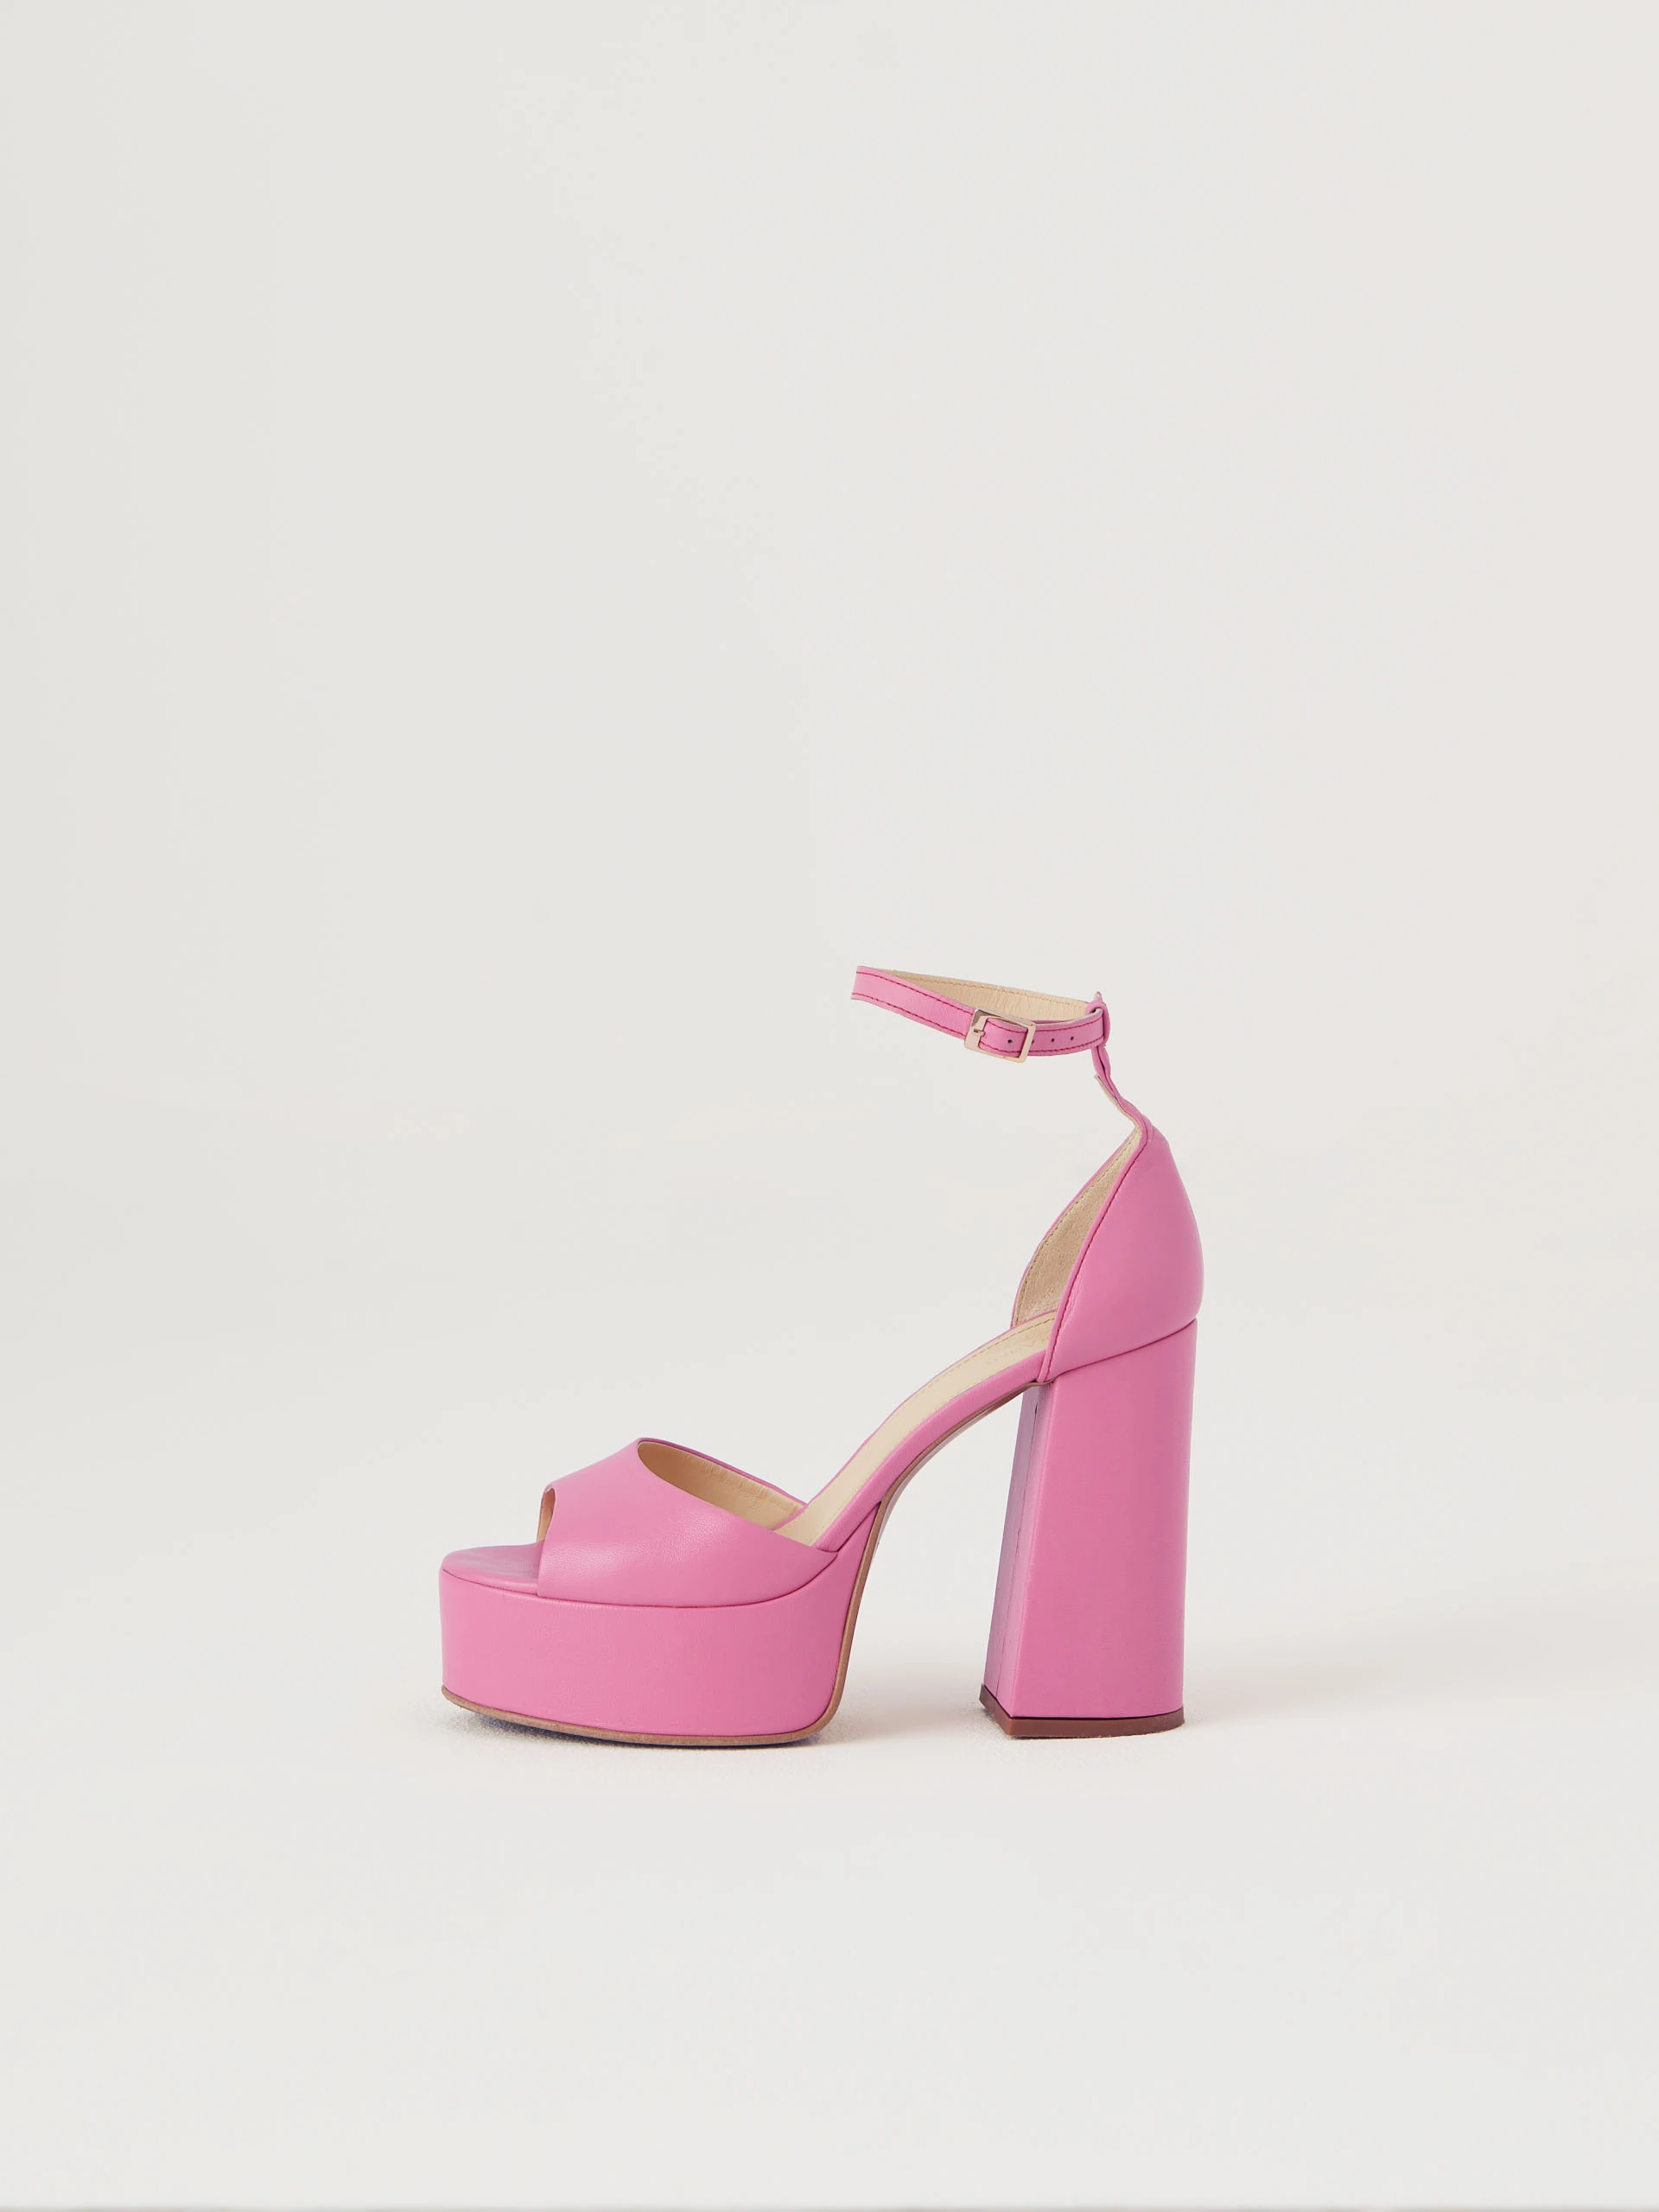 Pink leather platform sandals